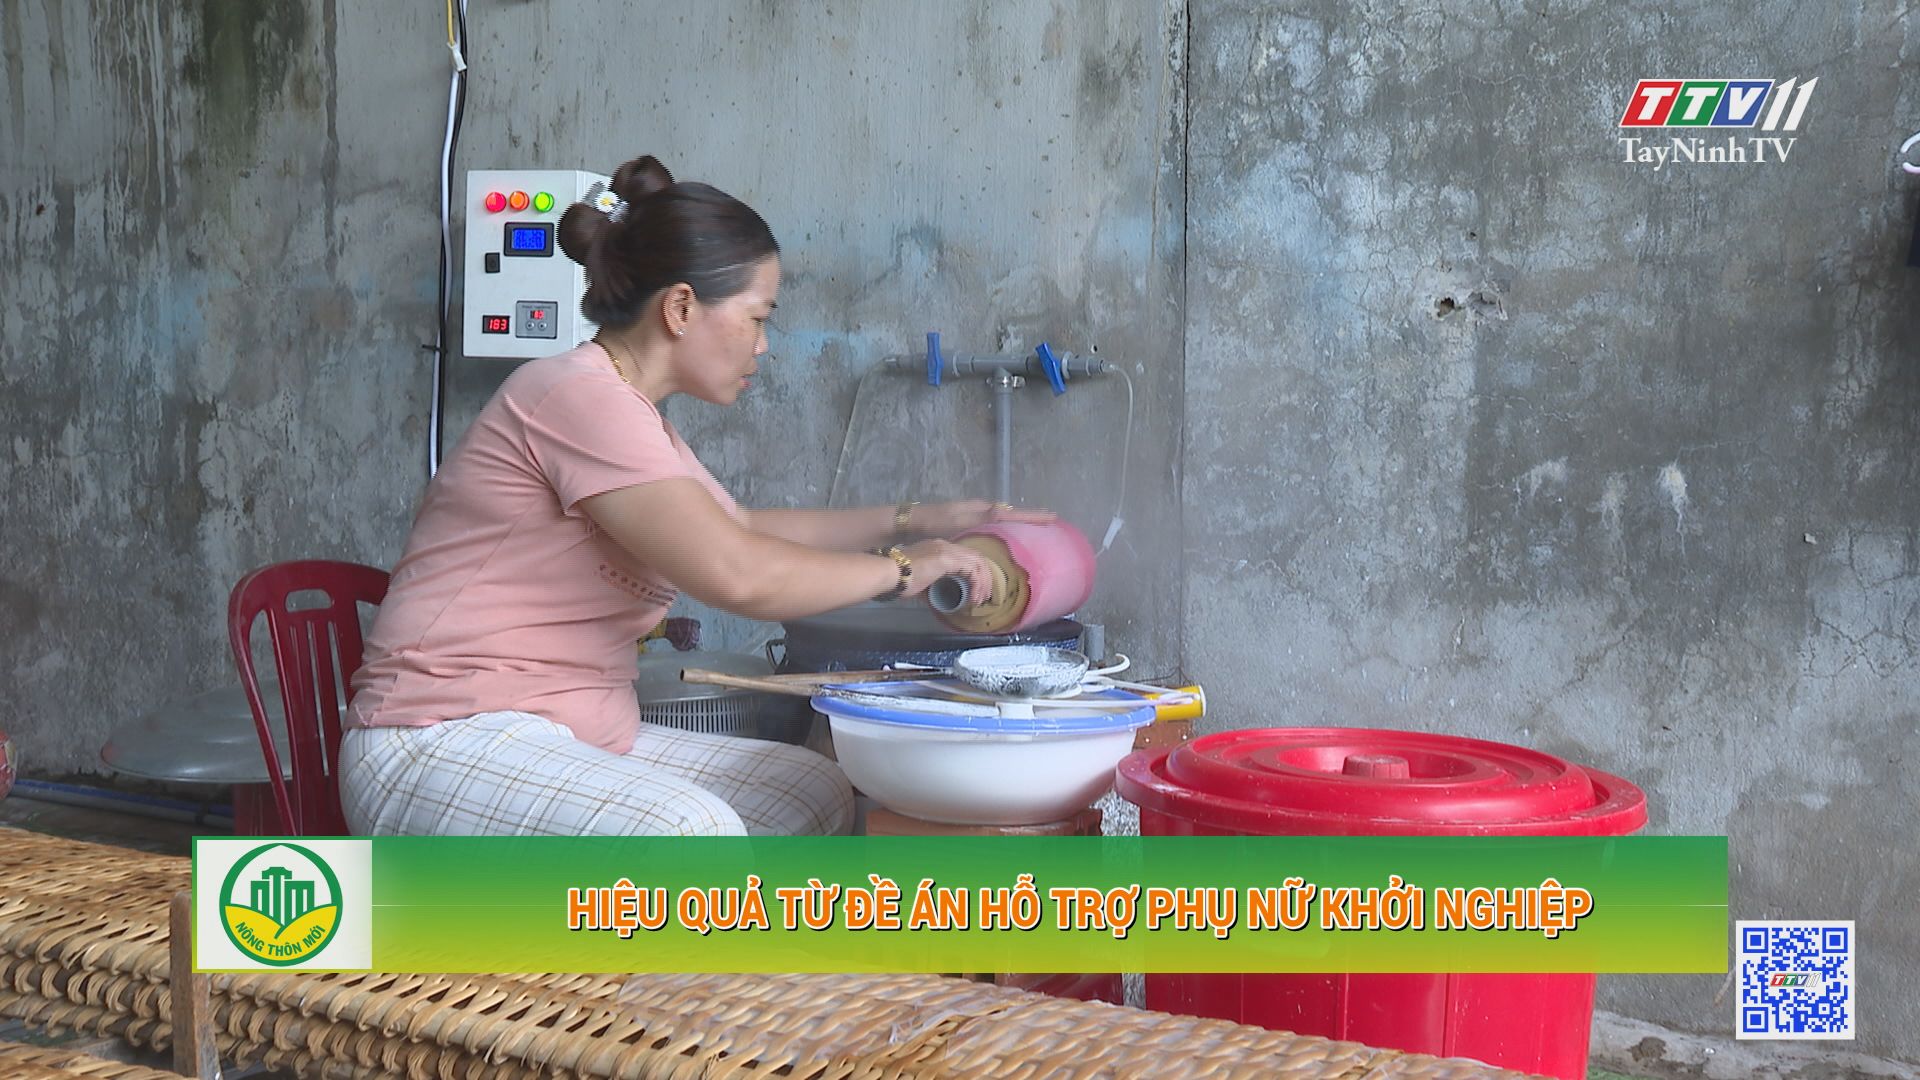 Hiệu quả từ đề án hỗ trợ phụ nữ khởi nghiệp | Tây Ninh xây dựng nông thôn mới | TayNinhTV